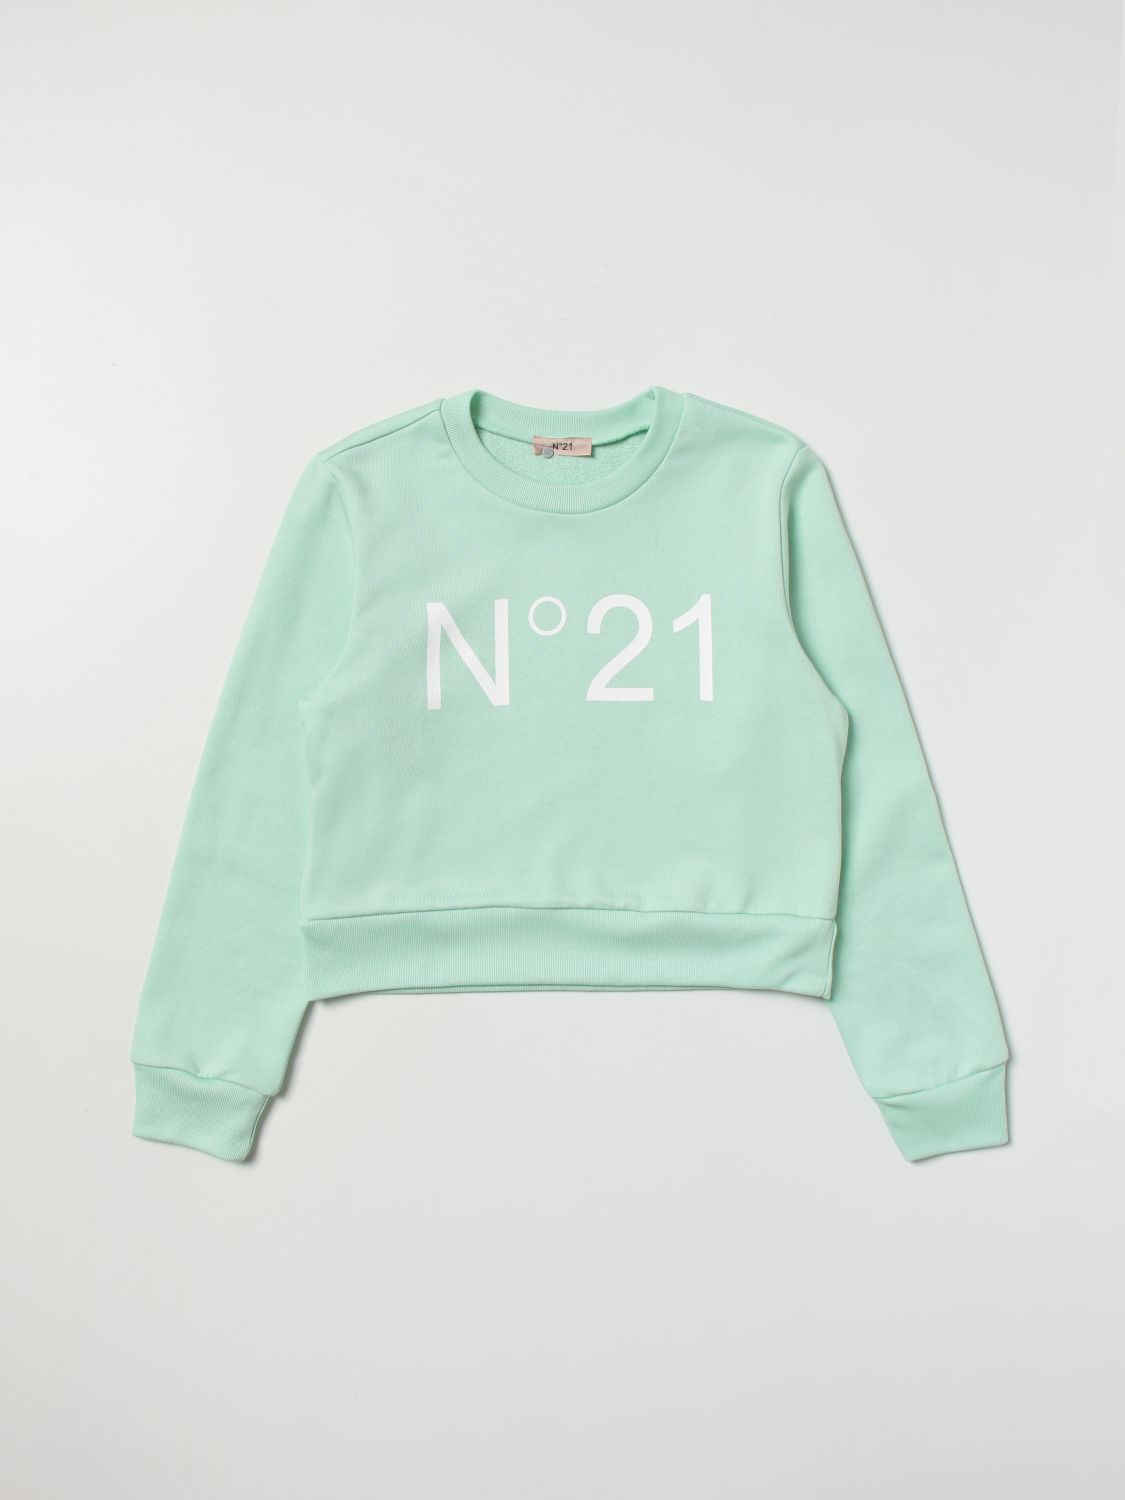 N°21 Sweater N° 21 Kids Color Green